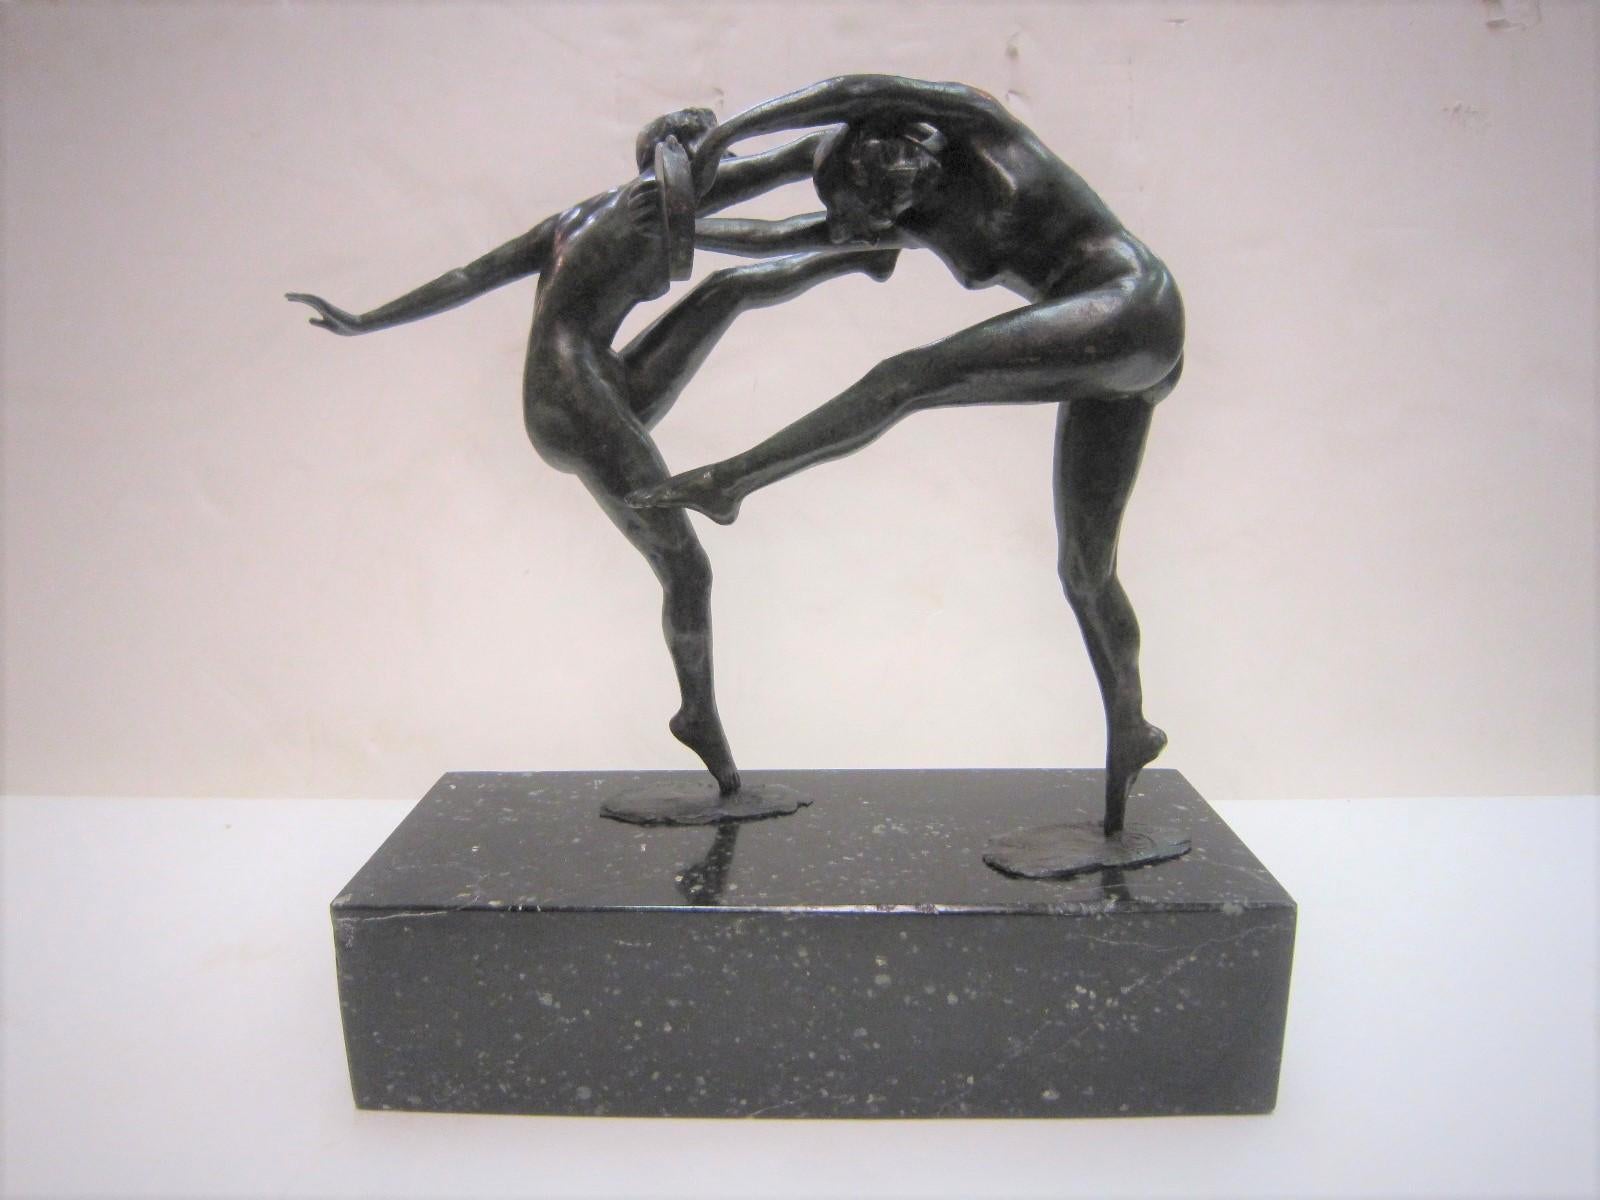 20th Century 1925 French Art Deco Bronze Sculpture of Dancers Signed Paul de Boulogne 